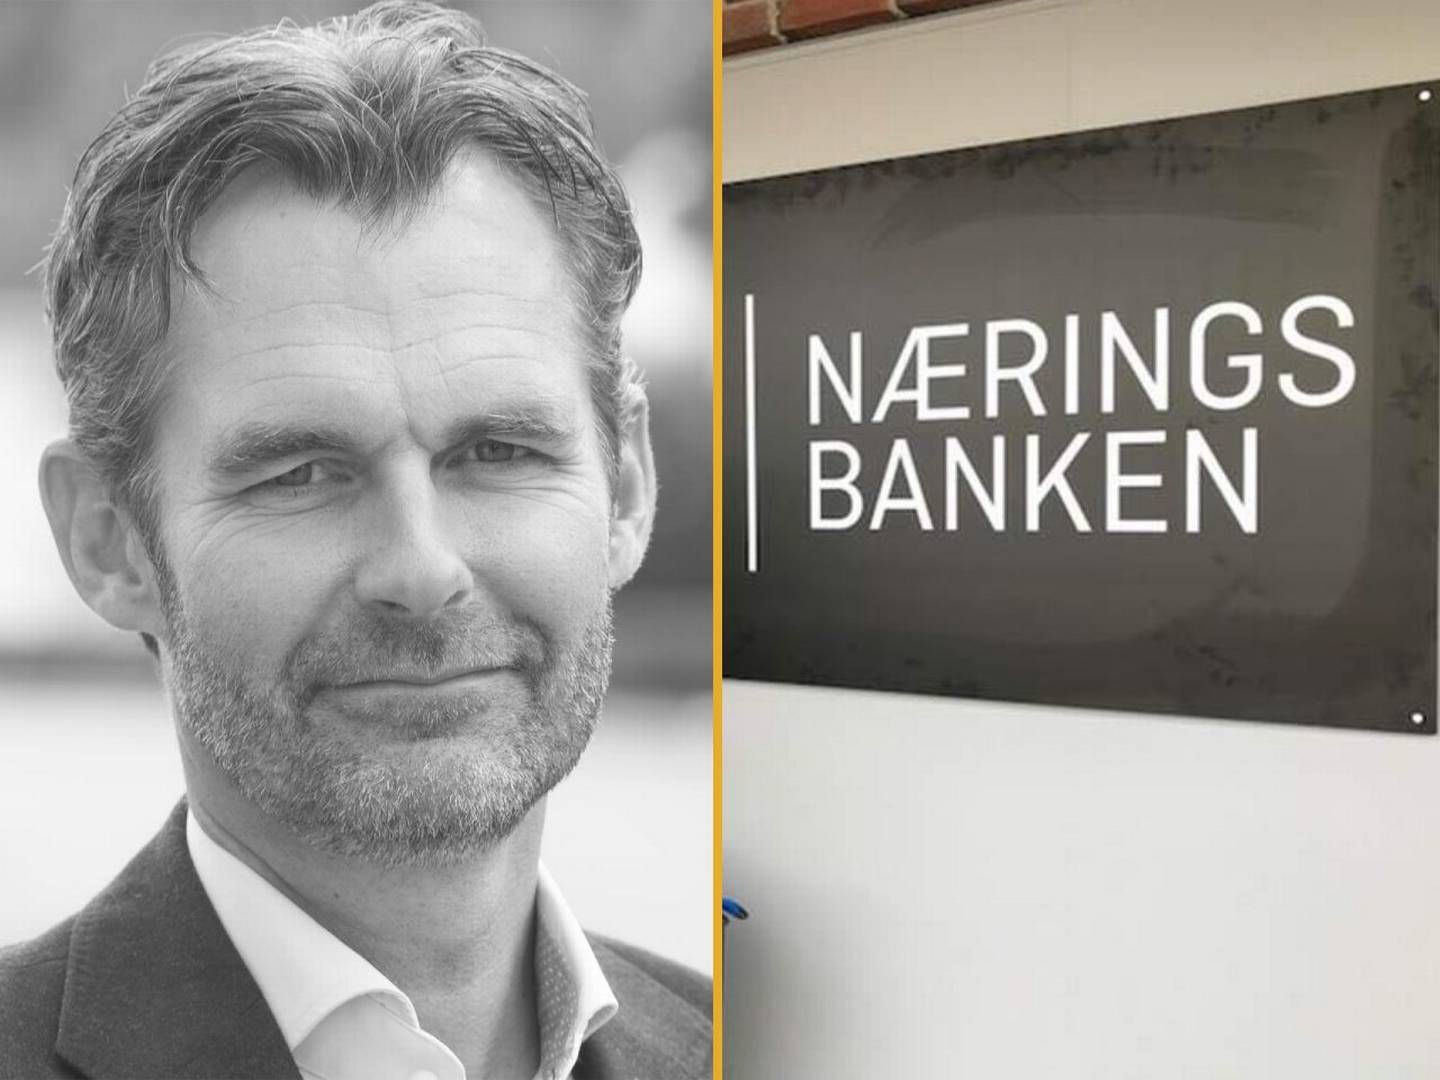 Banksjef Johan Linn i Næringsbanken har måttet sette alle utlån på pause etter at Finanstilsynet har beordret en uavhengig gjennomgang av bankens utlånsportefølje.